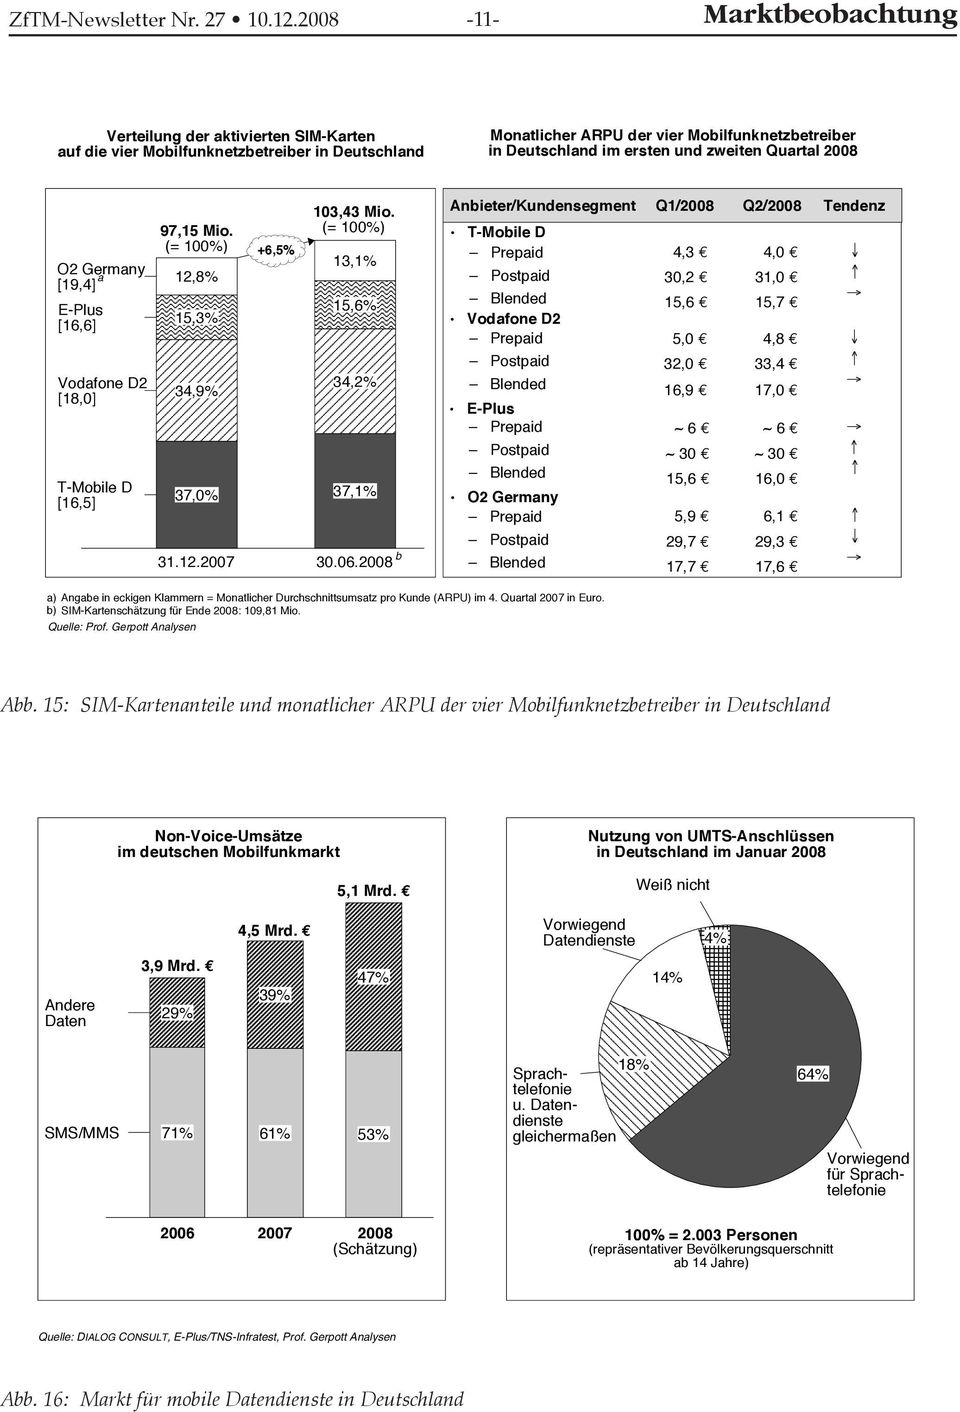 zweiten Quartal 2008 97,15 Mio. O2 Germany [19,4] a 12,8% E-Plus [16,6] Vodafone D2 [18,0] T-Mobile D [16,5] 15,3% 34,9% 37,0% +6,5% 103,43 Mio. 13,1% 15,6% 34,2% 37,1% 31.12.2007 30.06.